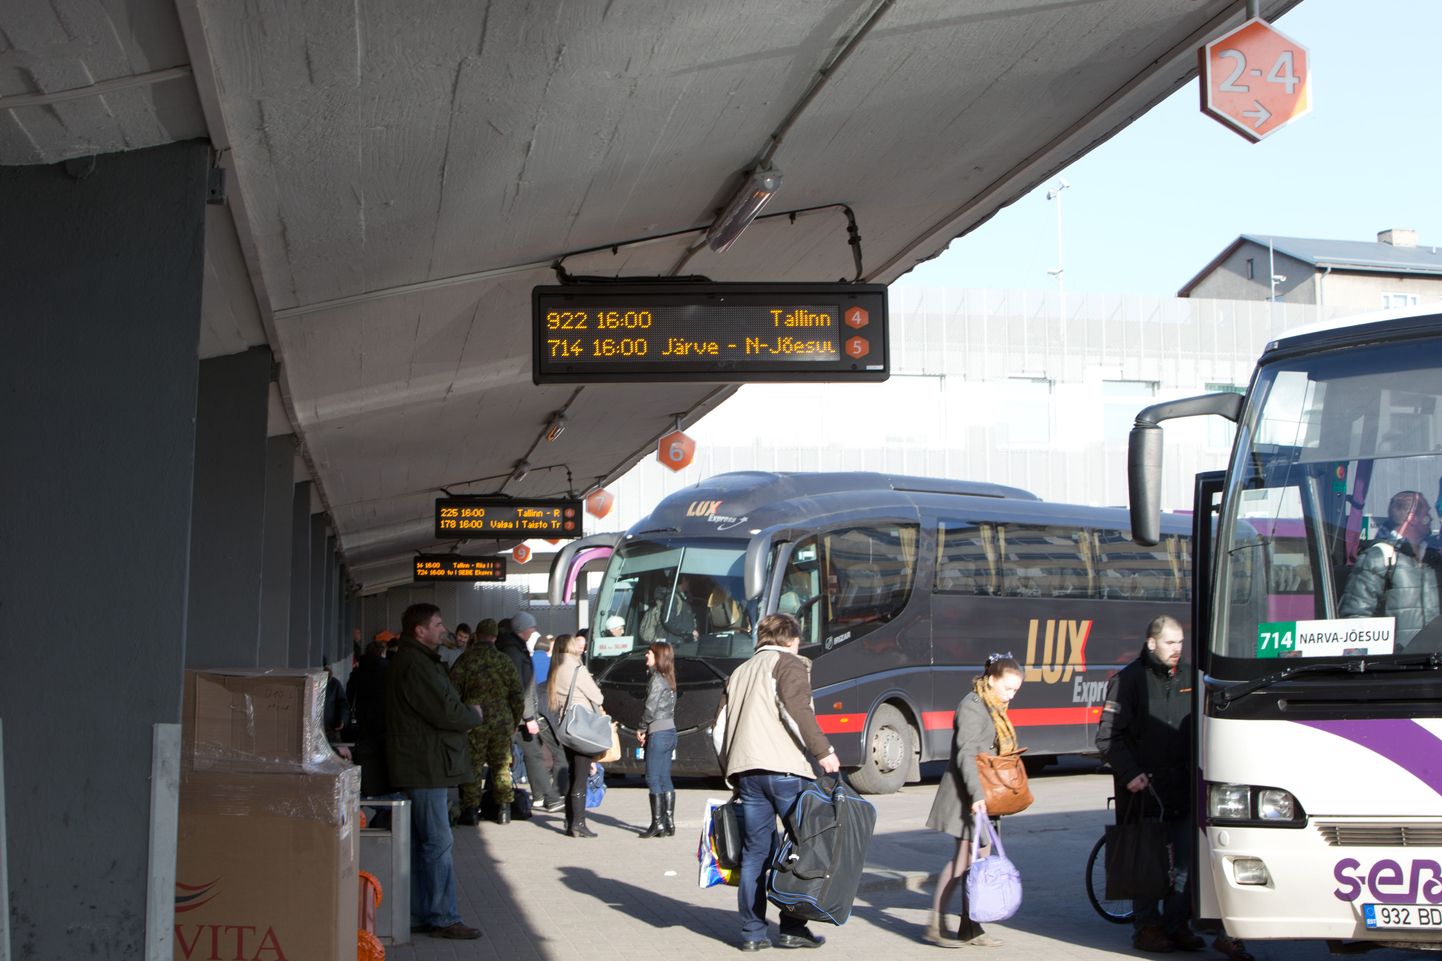 Kuigi Tallinna bussijaamas on olemas korralik teavitussüsteem, suutis hollandlane Kärdla ja Kuressaare bussid segi ajada.